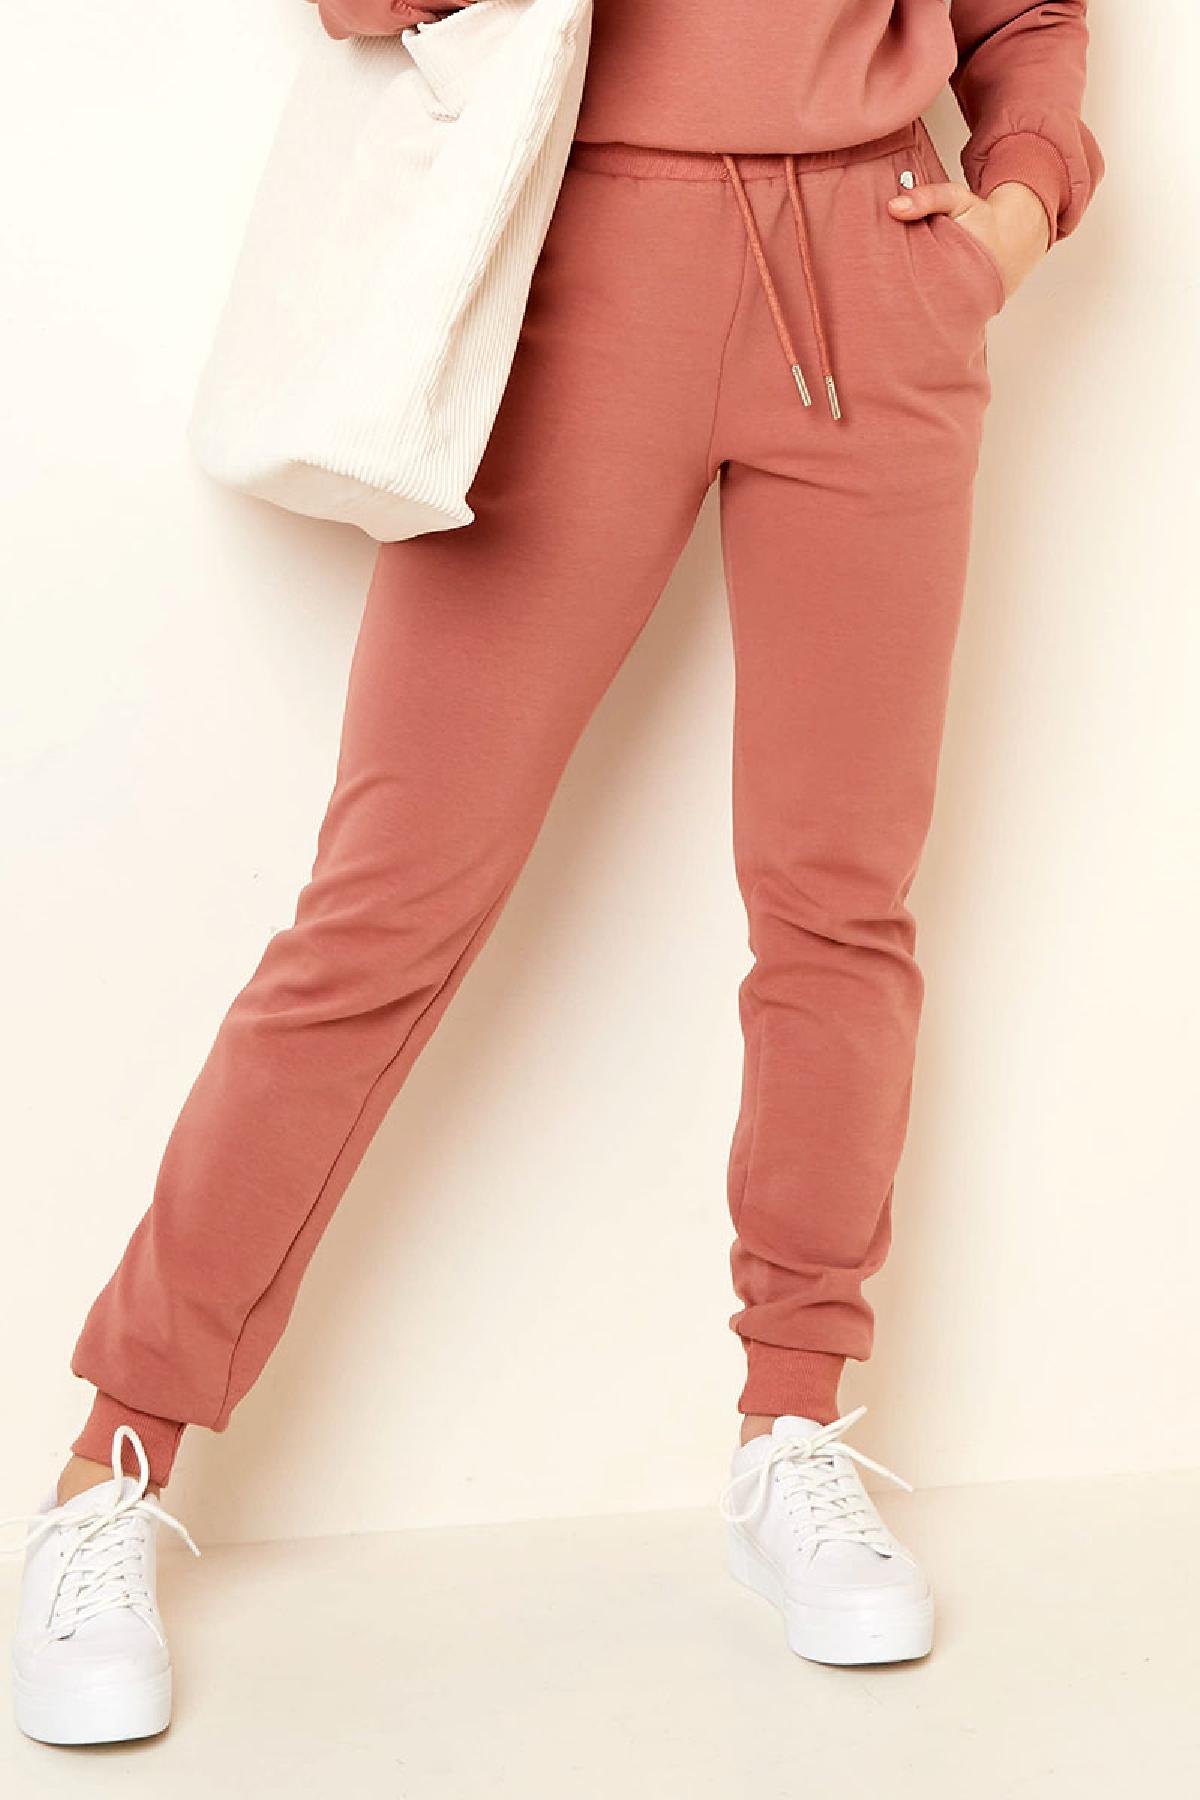 Pantalones cómodos estilo casual Naranja XL Imagen2